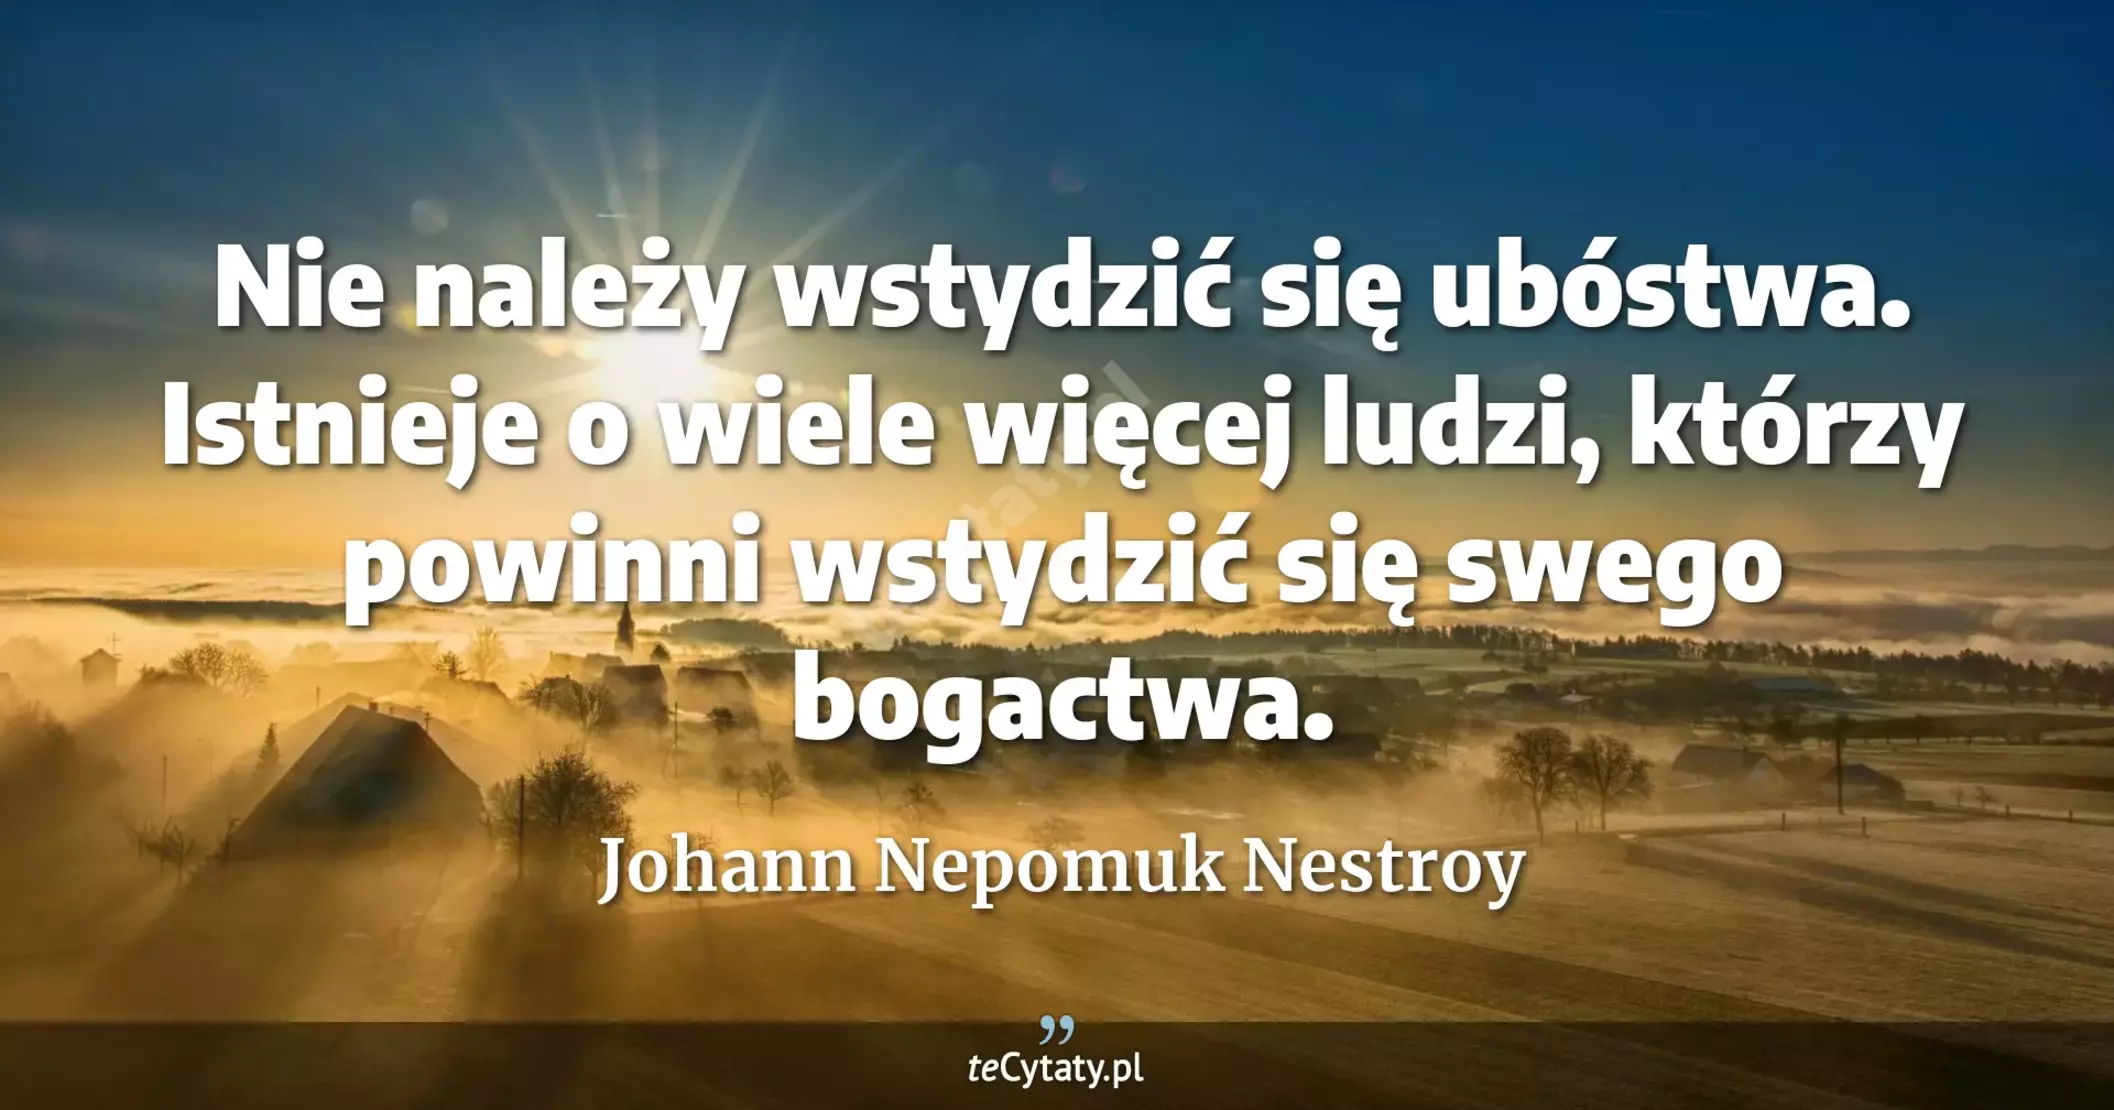 Nie należy wstydzić się ubóstwa. Istnieje o wiele więcej ludzi, którzy powinni wstydzić się swego bogactwa. - Johann Nepomuk Nestroy